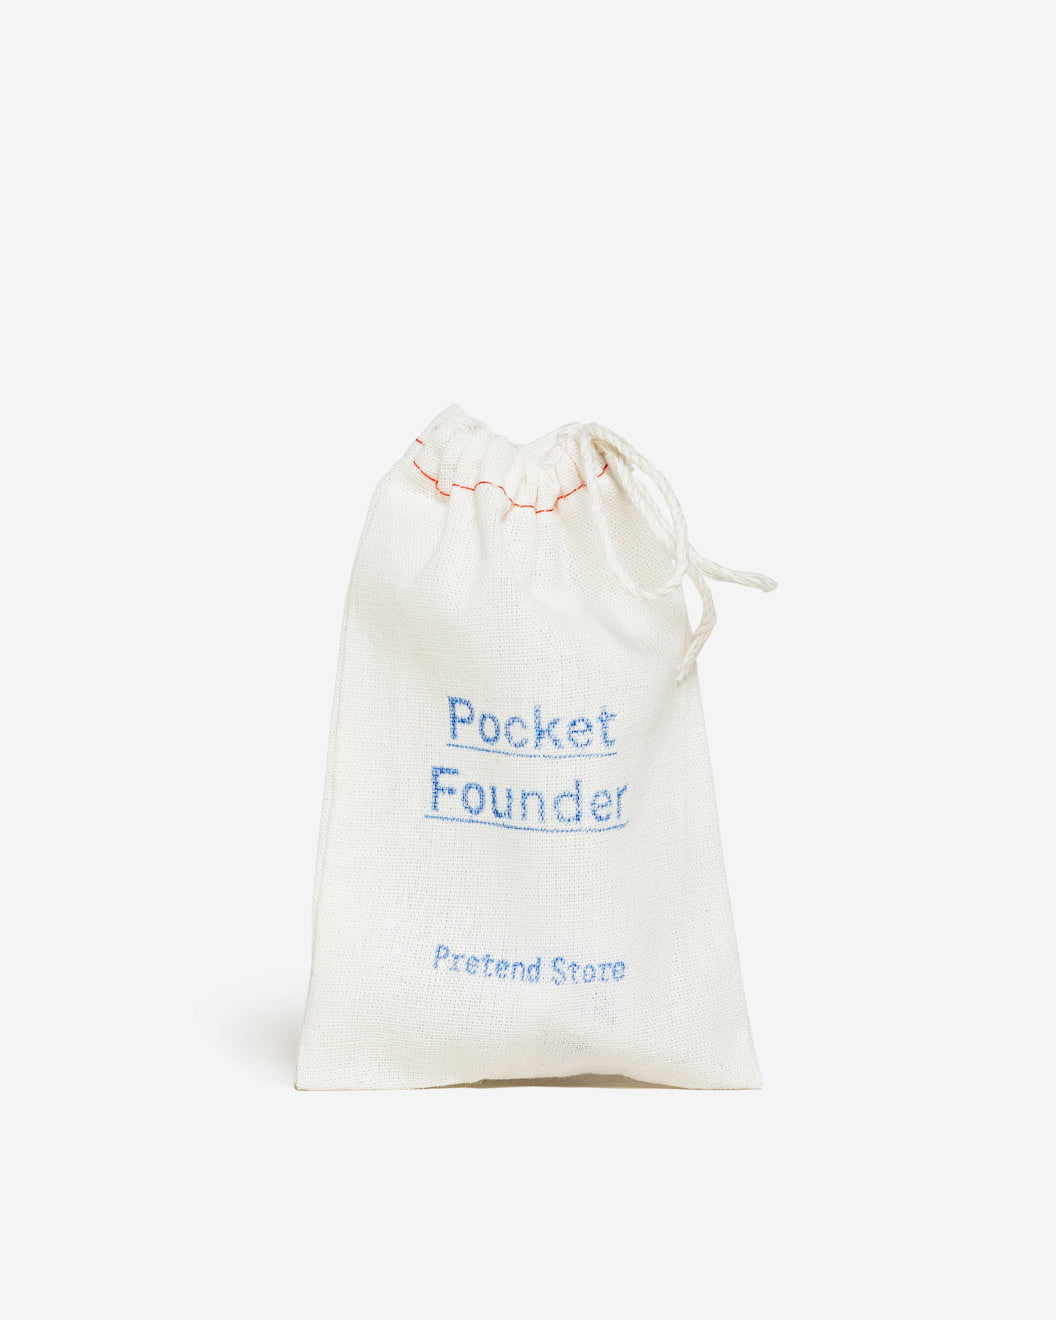 Pocket Founder